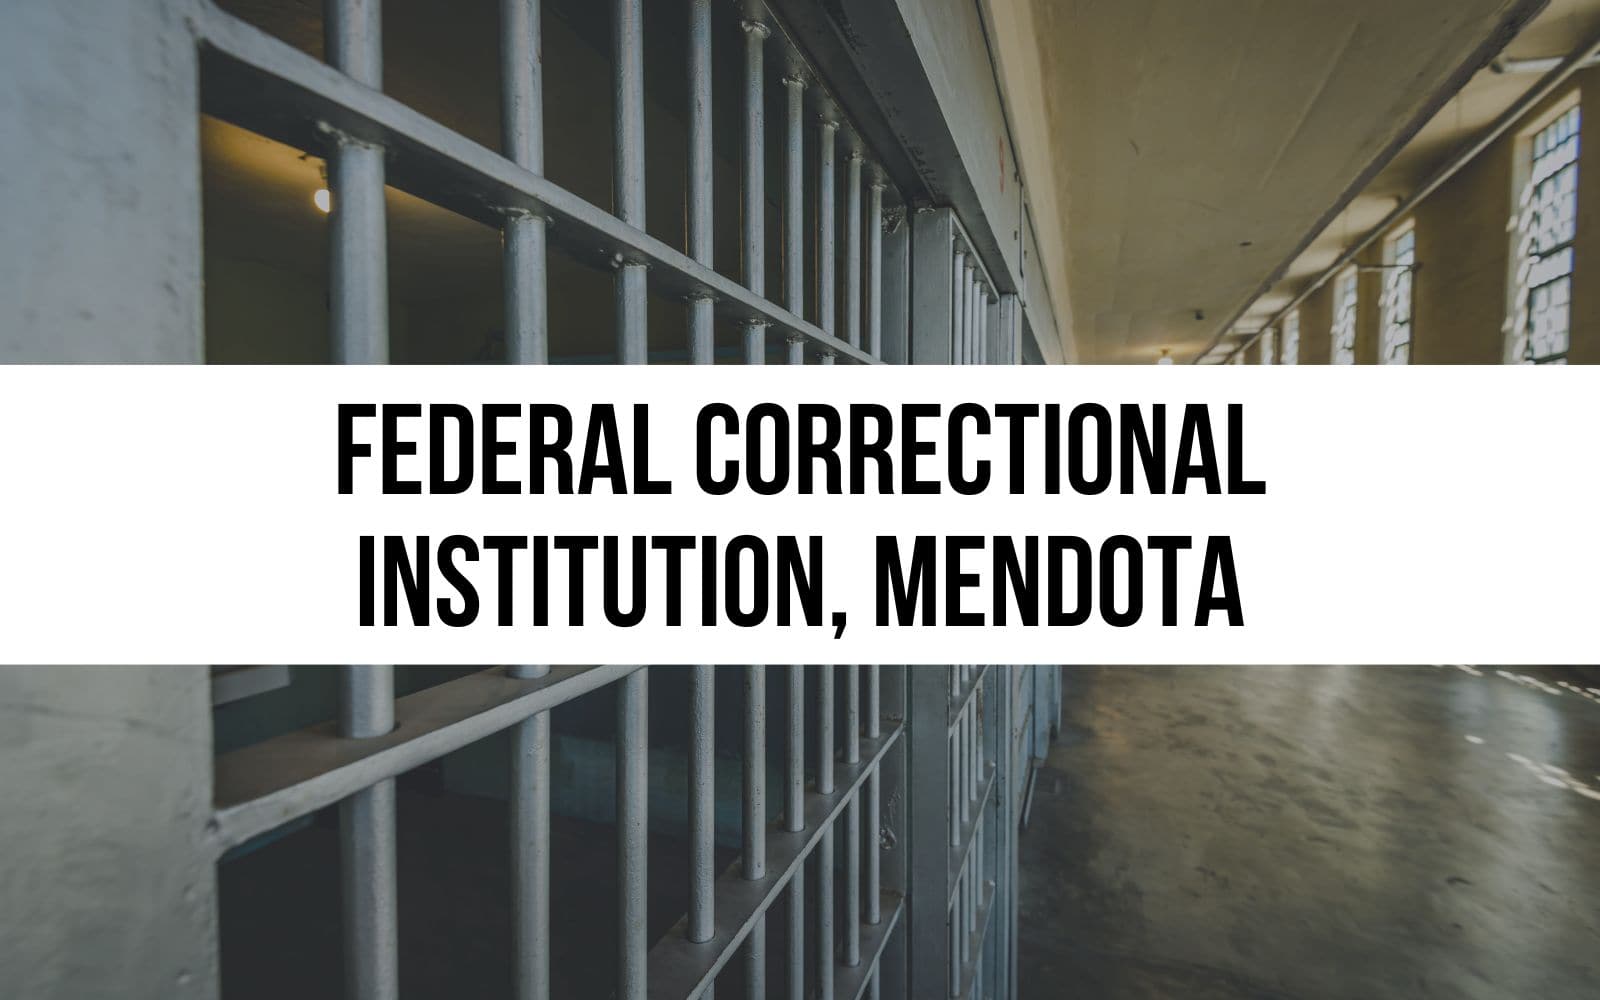 Federal Correctional Institution, Mendota